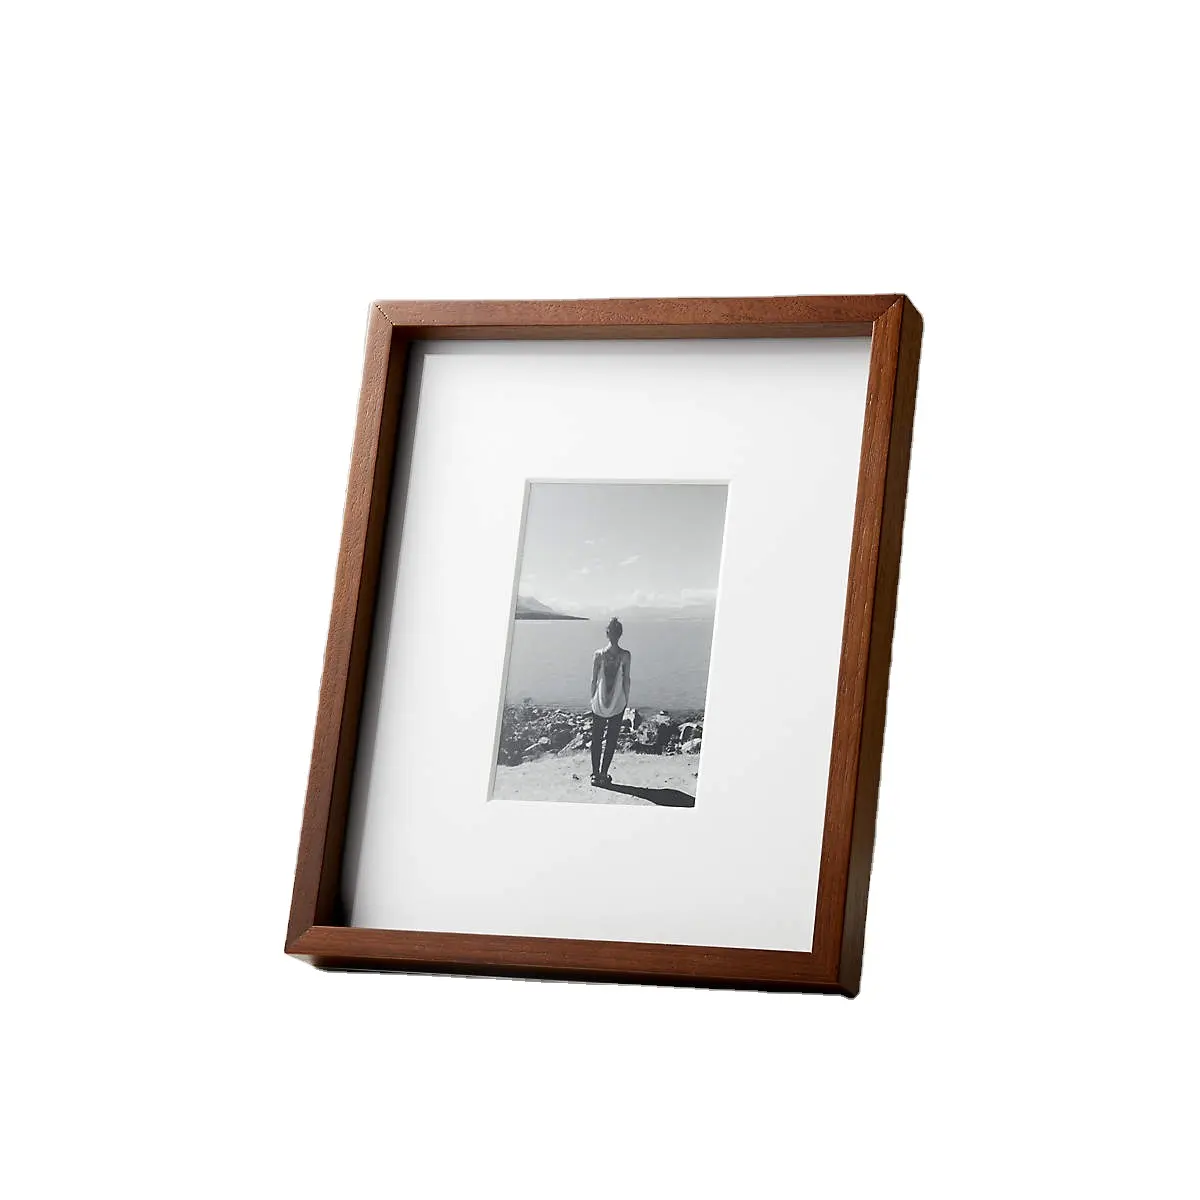 JUNJI-marco de madera maciza para decoración del hogar, marco de fotos de regalo para exhibición de mesa y montaje en pared, 5x7